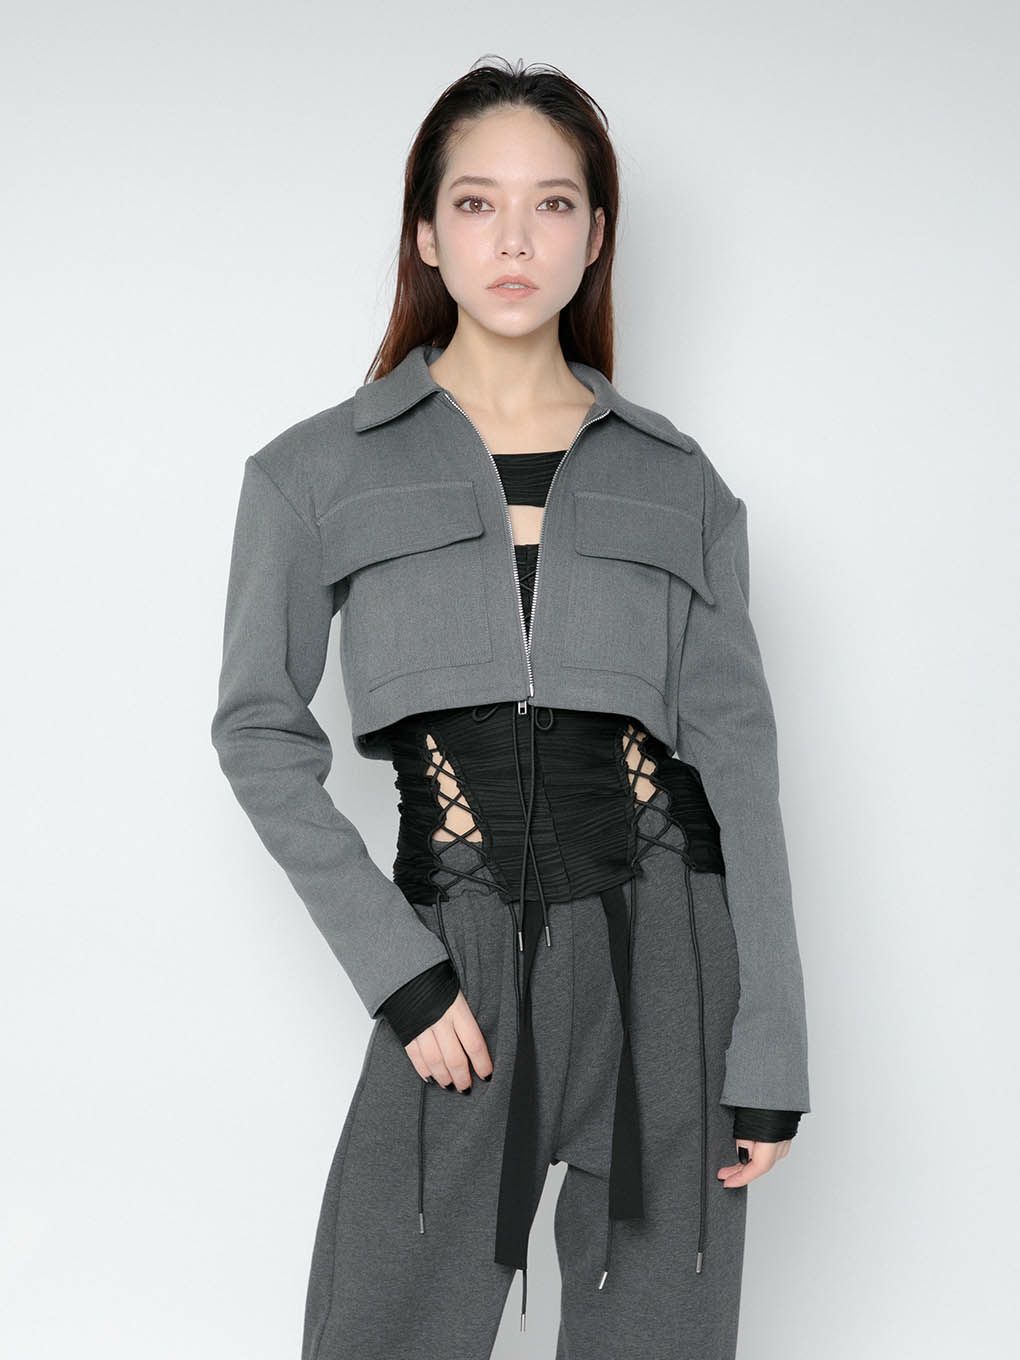 6,560円arm slit cropped jacket gray